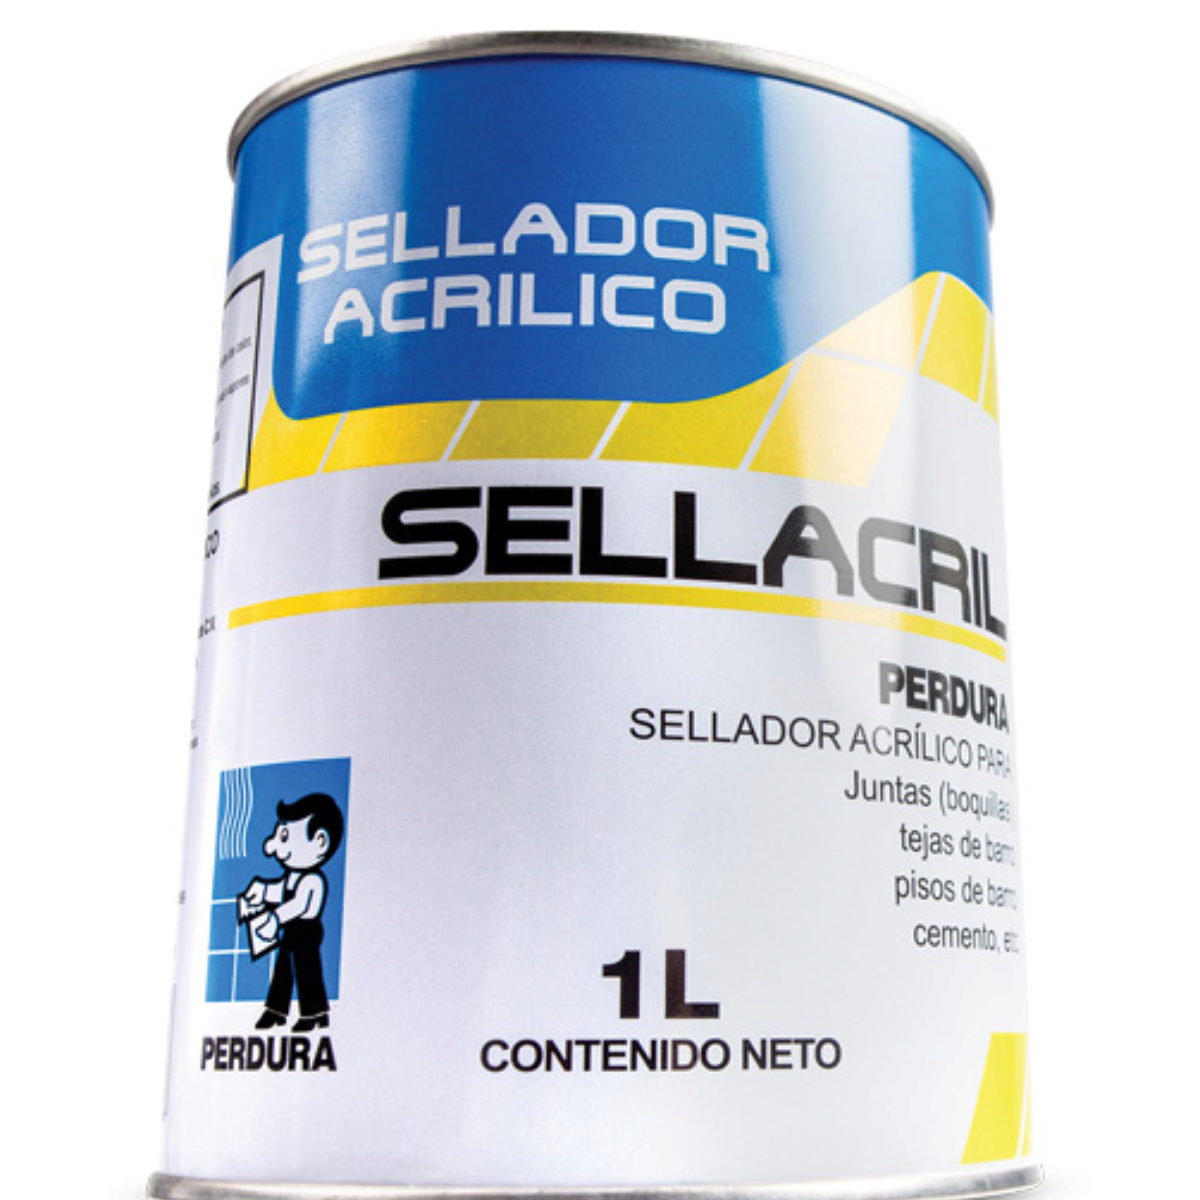 Sellacril Cubeta 18 Lts